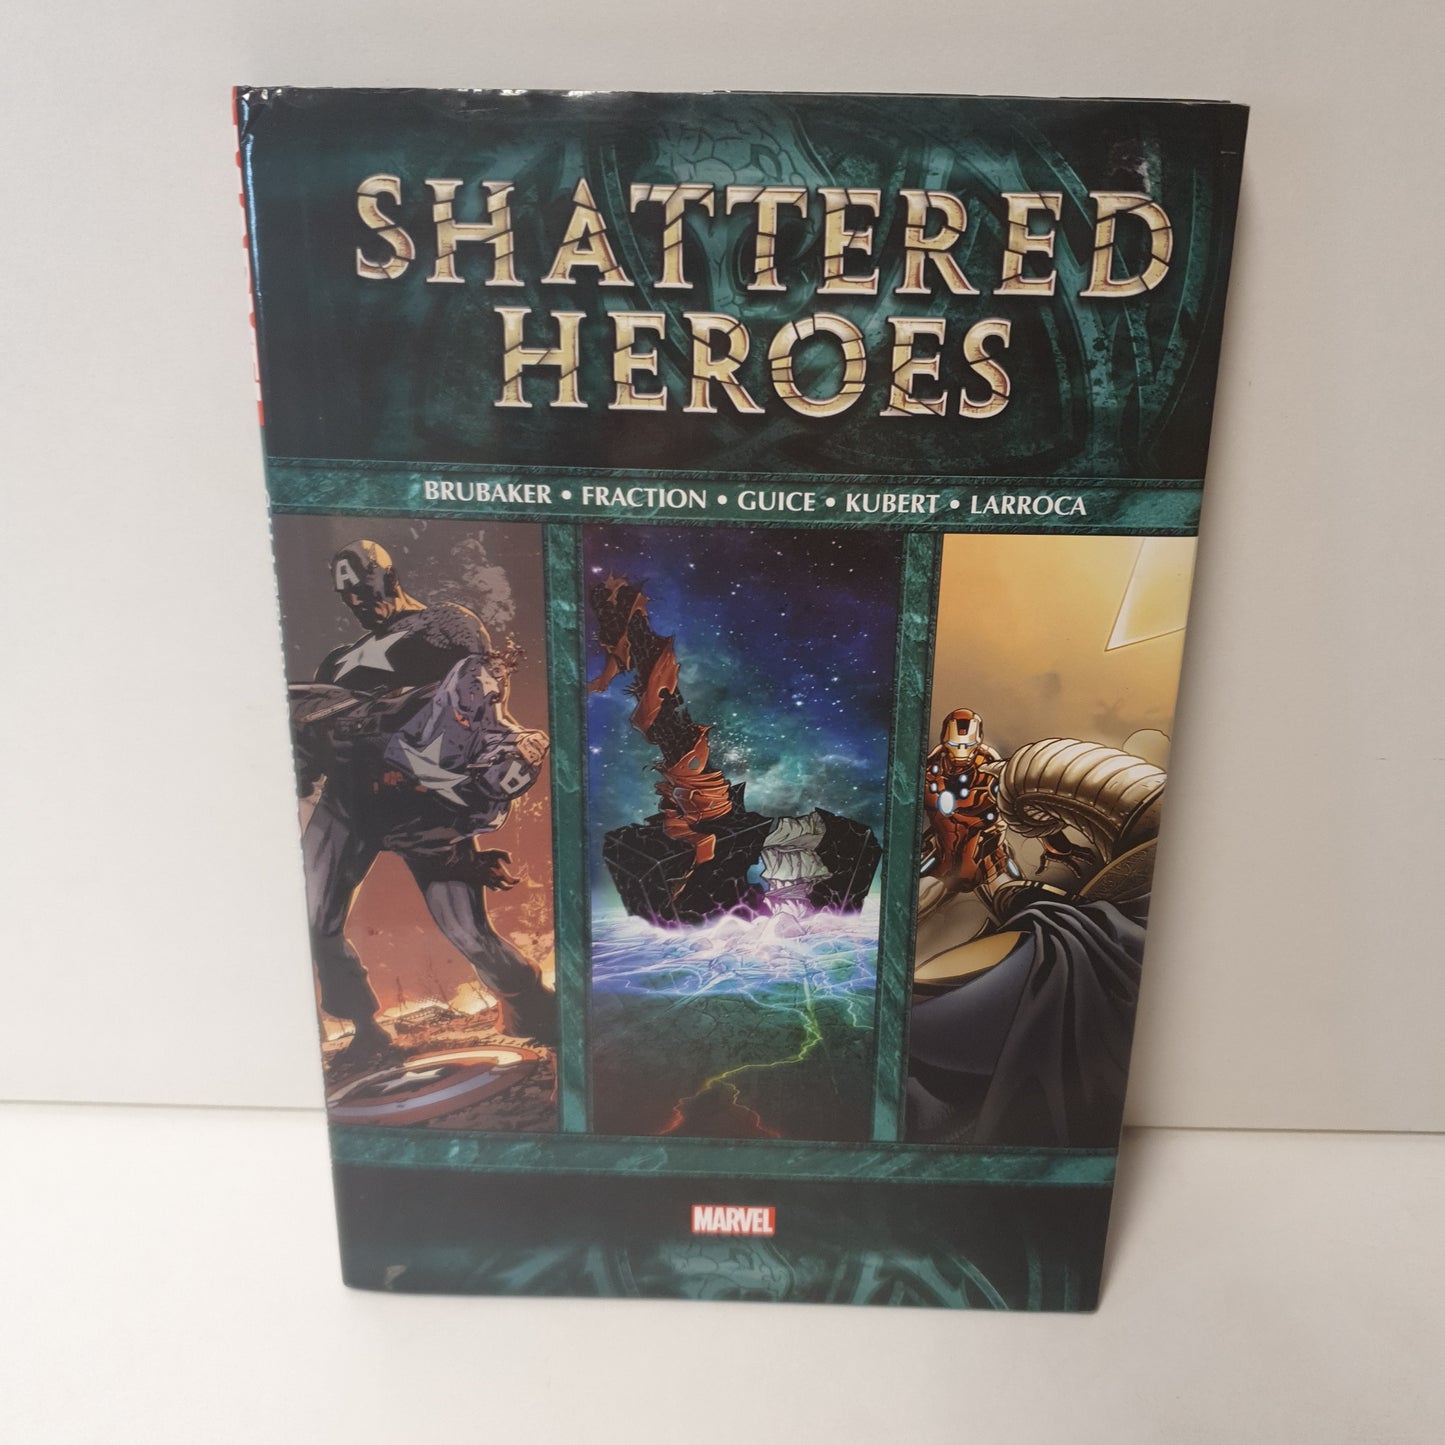 Shattered Heroes by Brubaker, Fraction, Guice, Kubert & Larroca (2012)